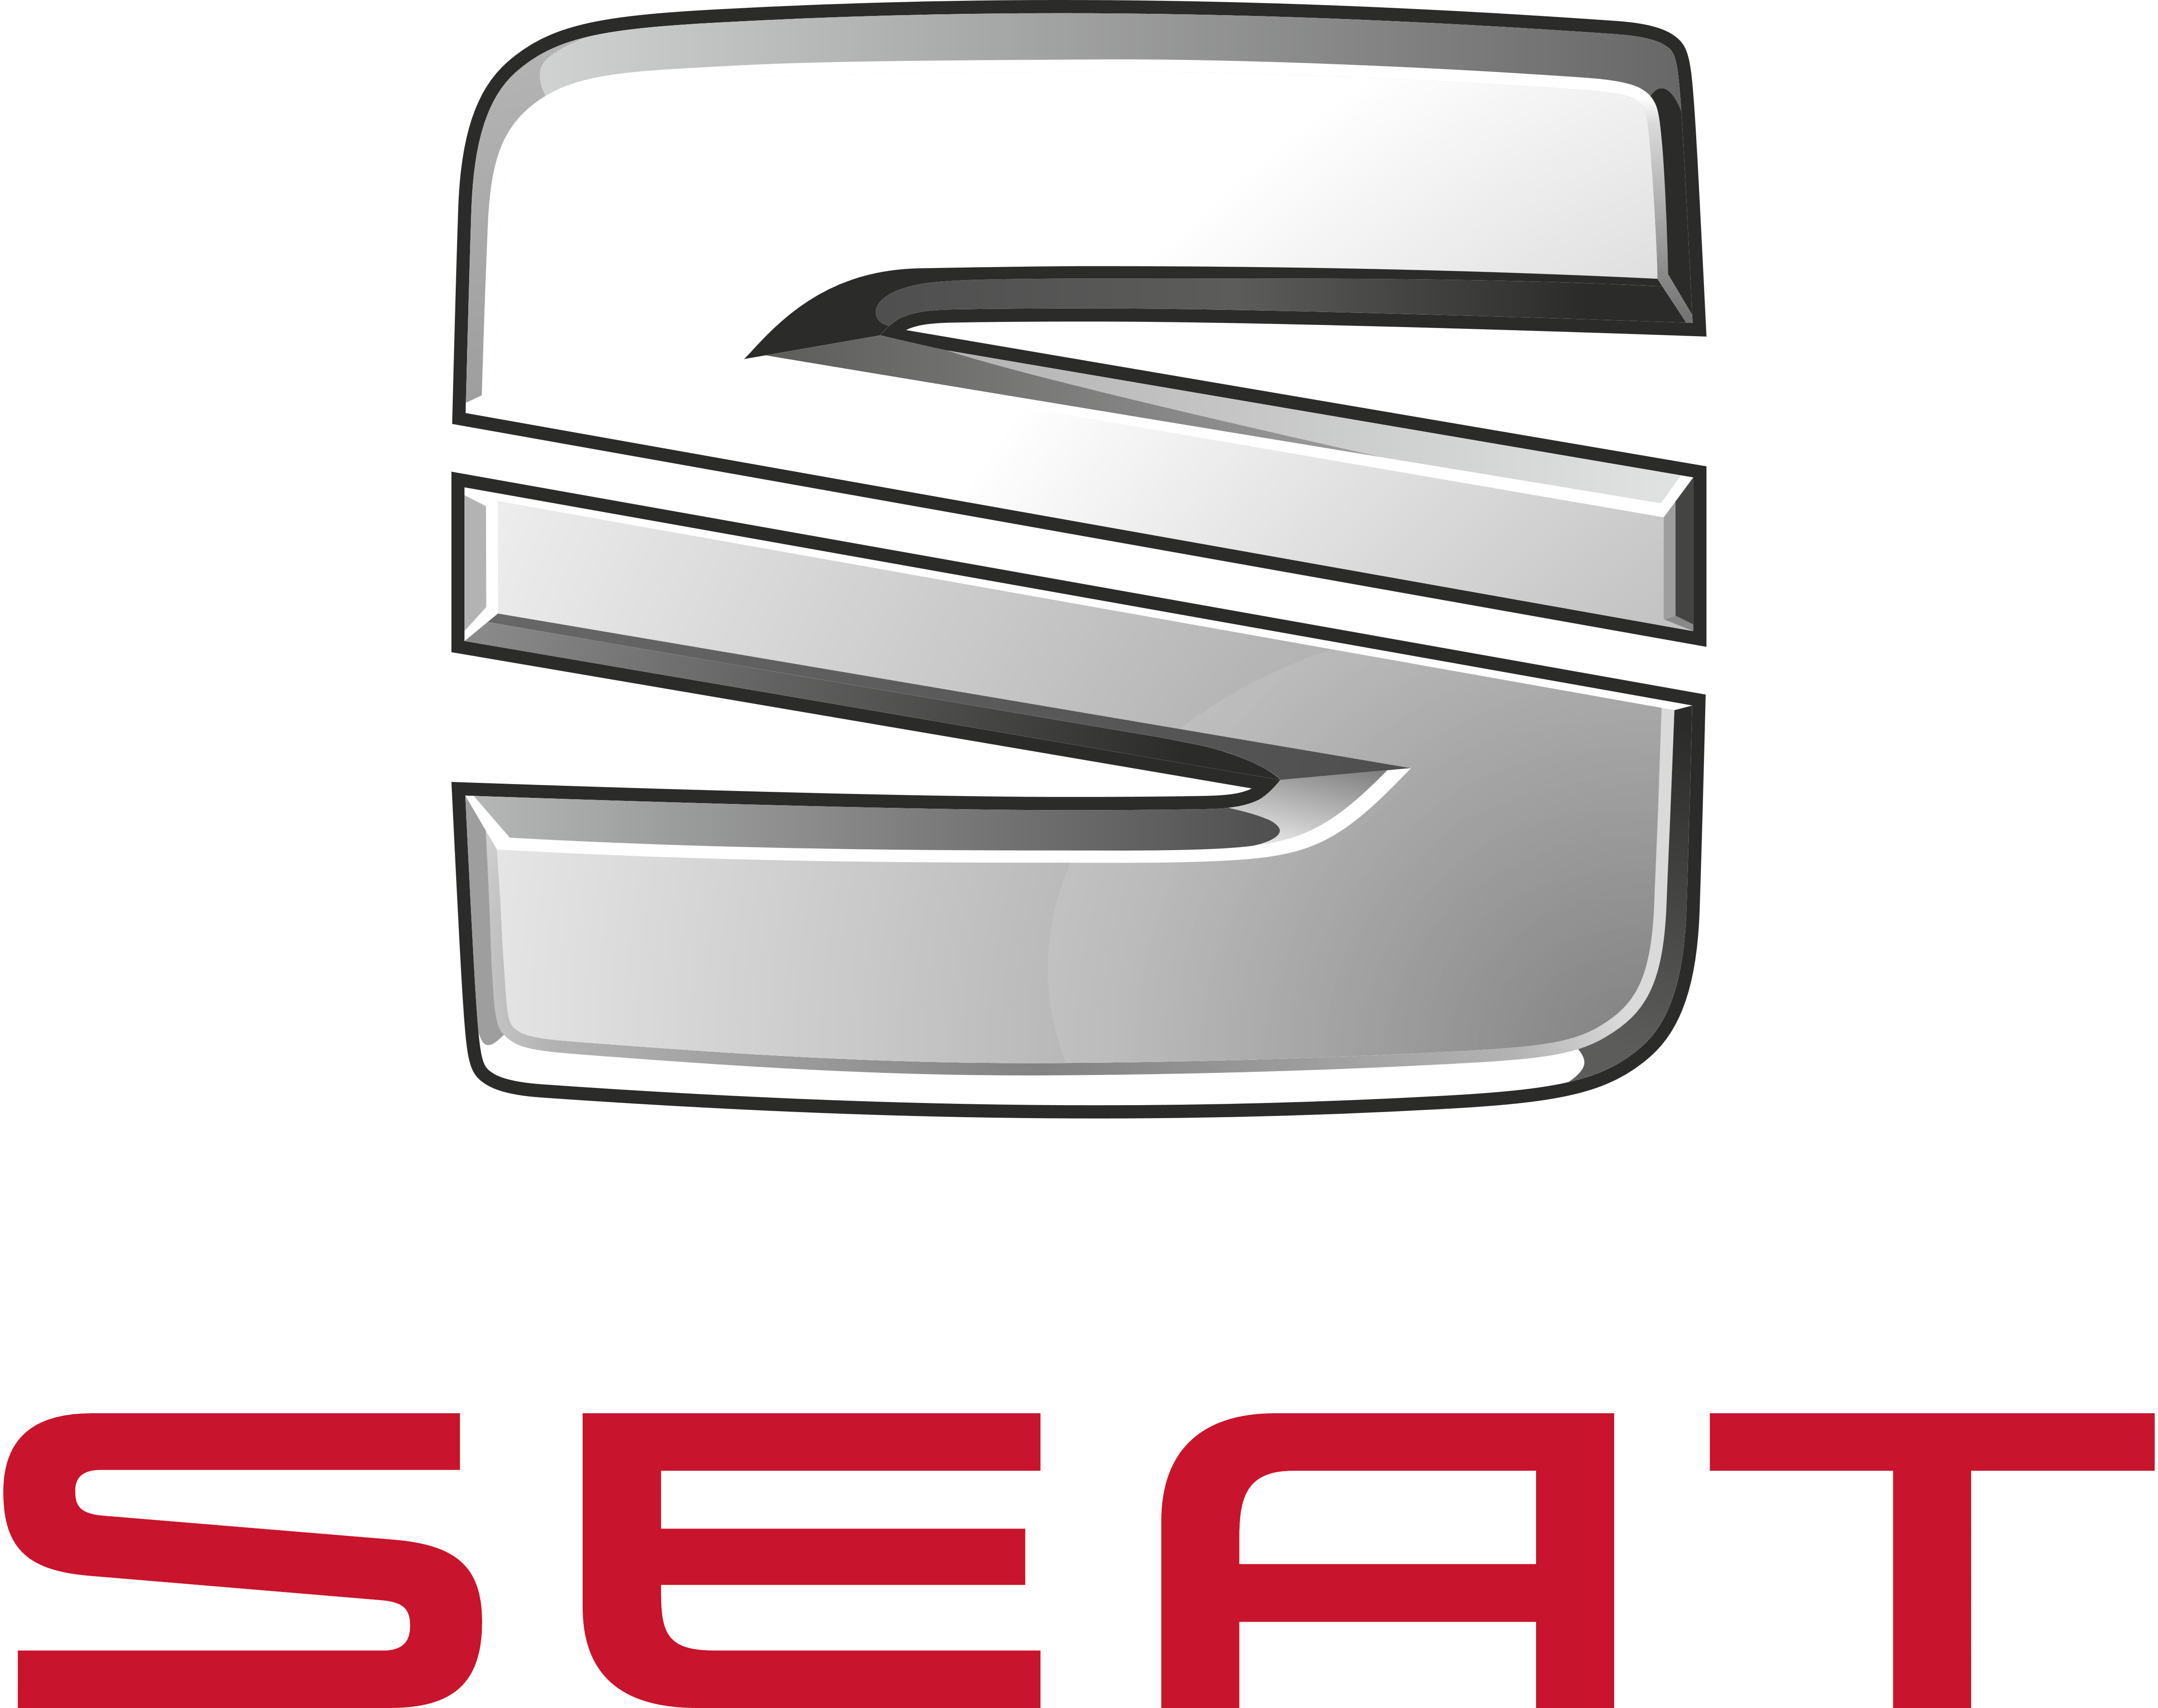 Seat – Logos Download - Seat, Transparent background PNG HD thumbnail